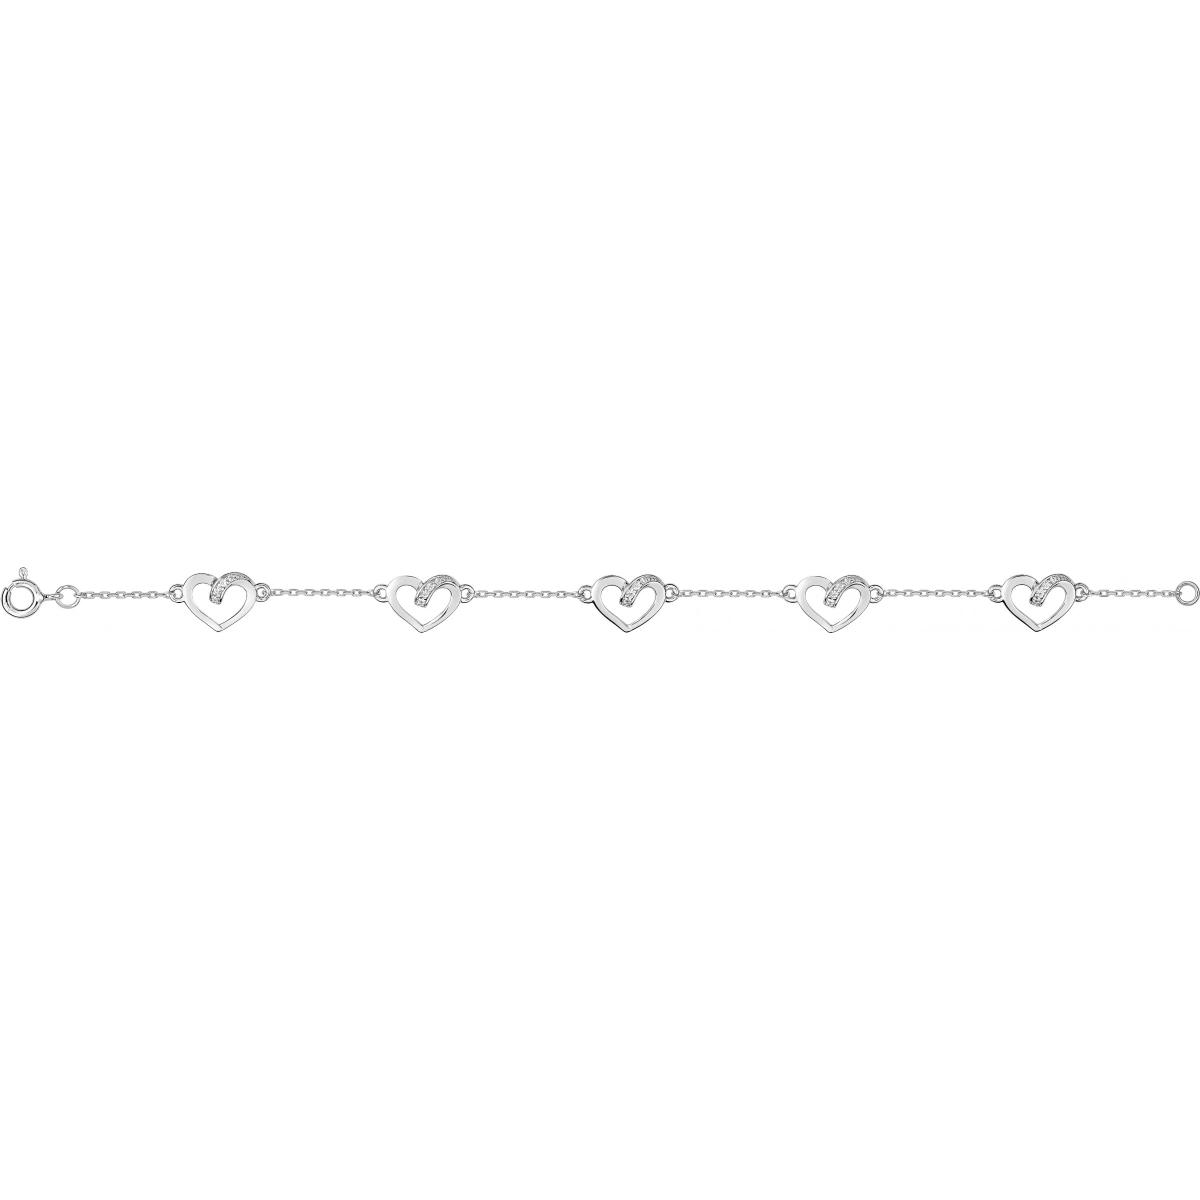 Bracelet 18cm w. cz rh925 Silver  Lua Blanca  ASBM40Z18.0